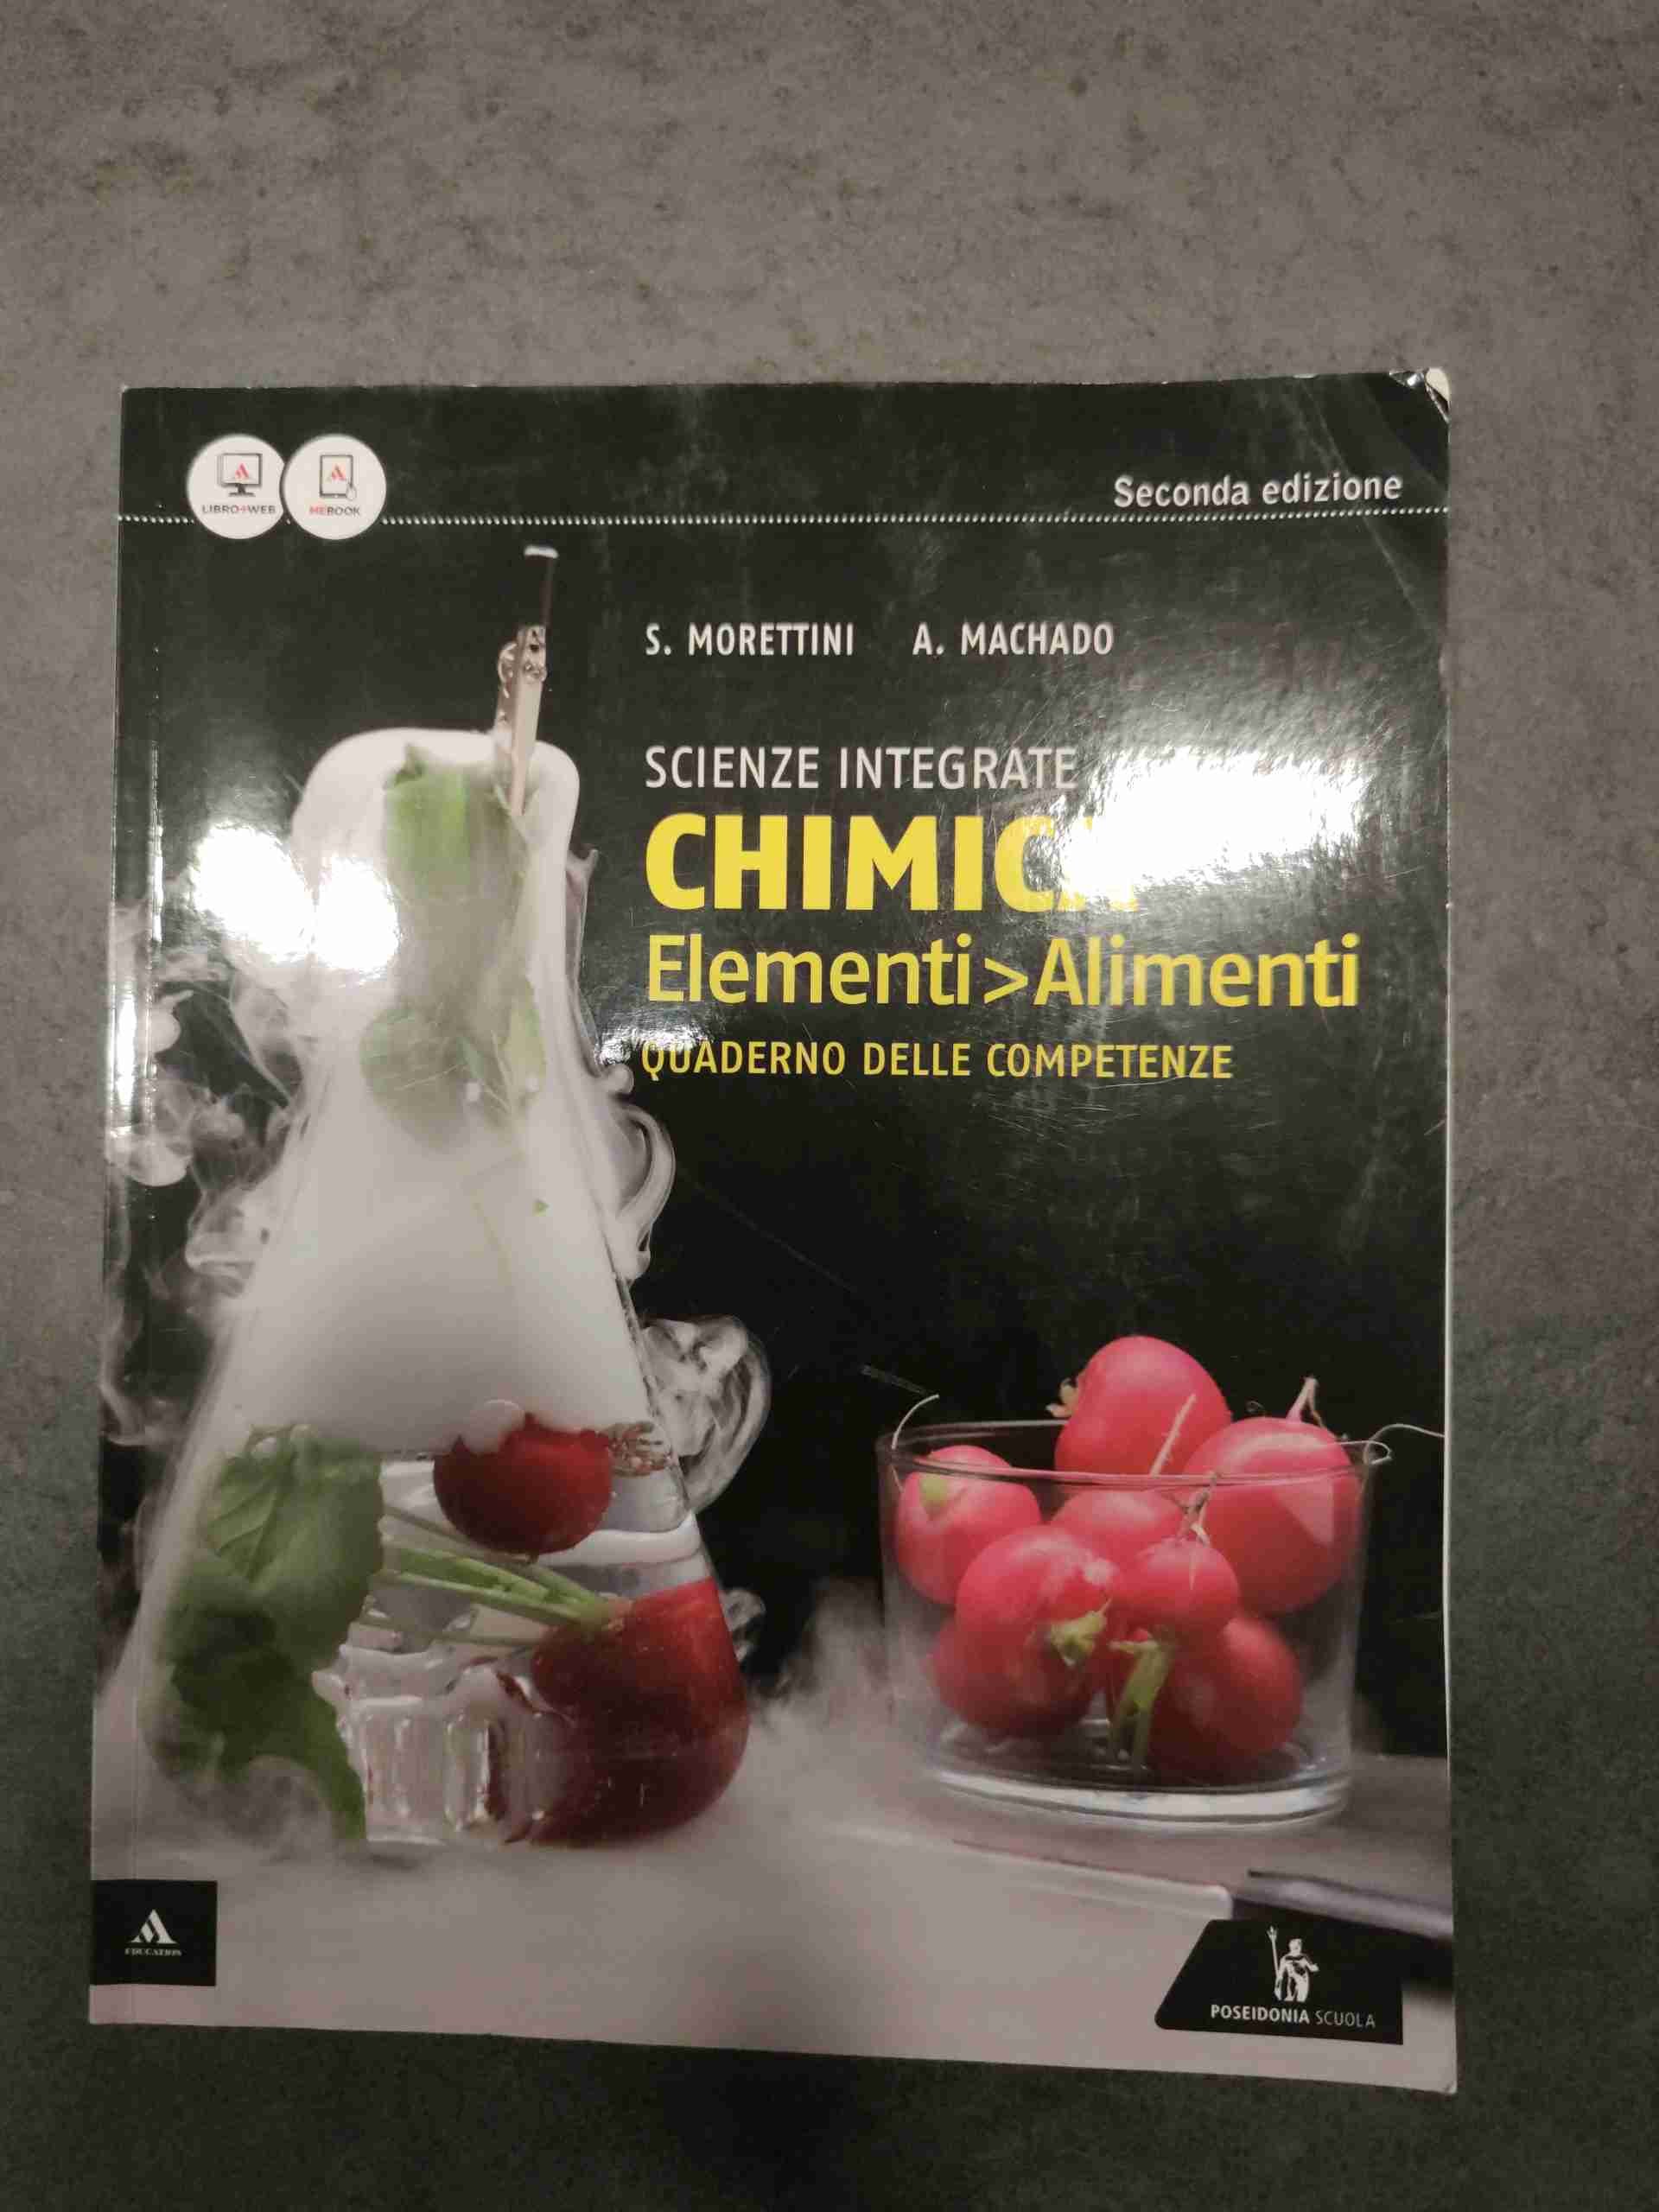 Scienze integrate: Chimica Elementi>Alimenti Quaderno delle competenze Seconda Edizione